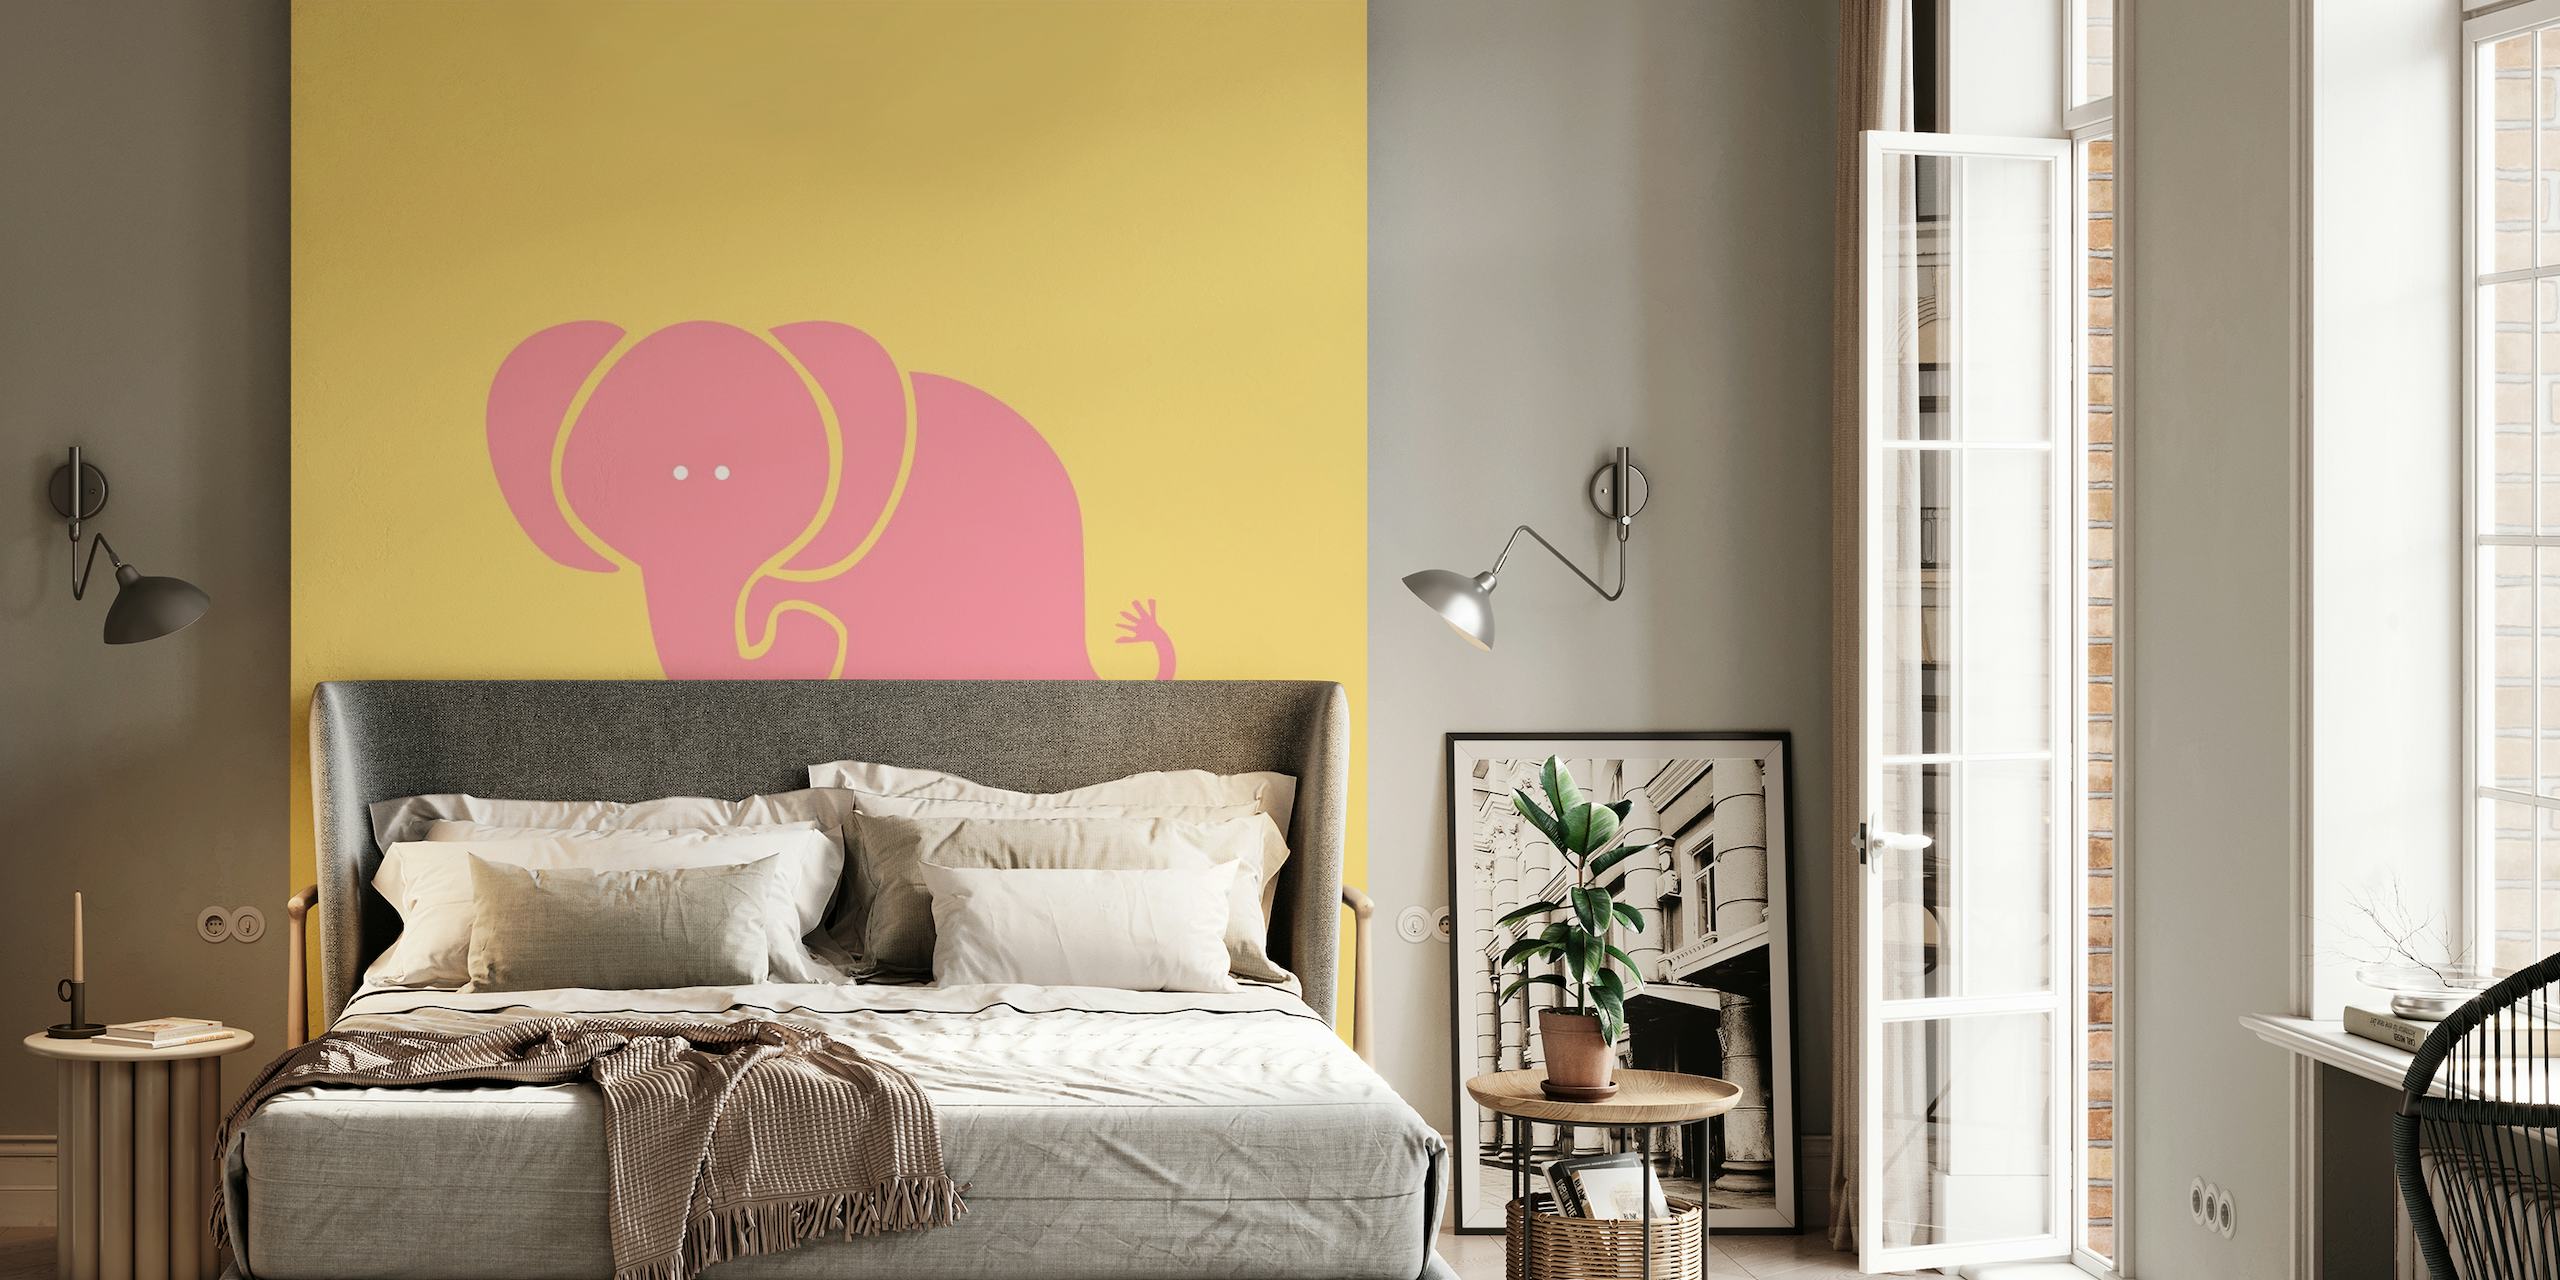 Stylizowany szafranowo-żółty słoń na różowej fototapecie w tle